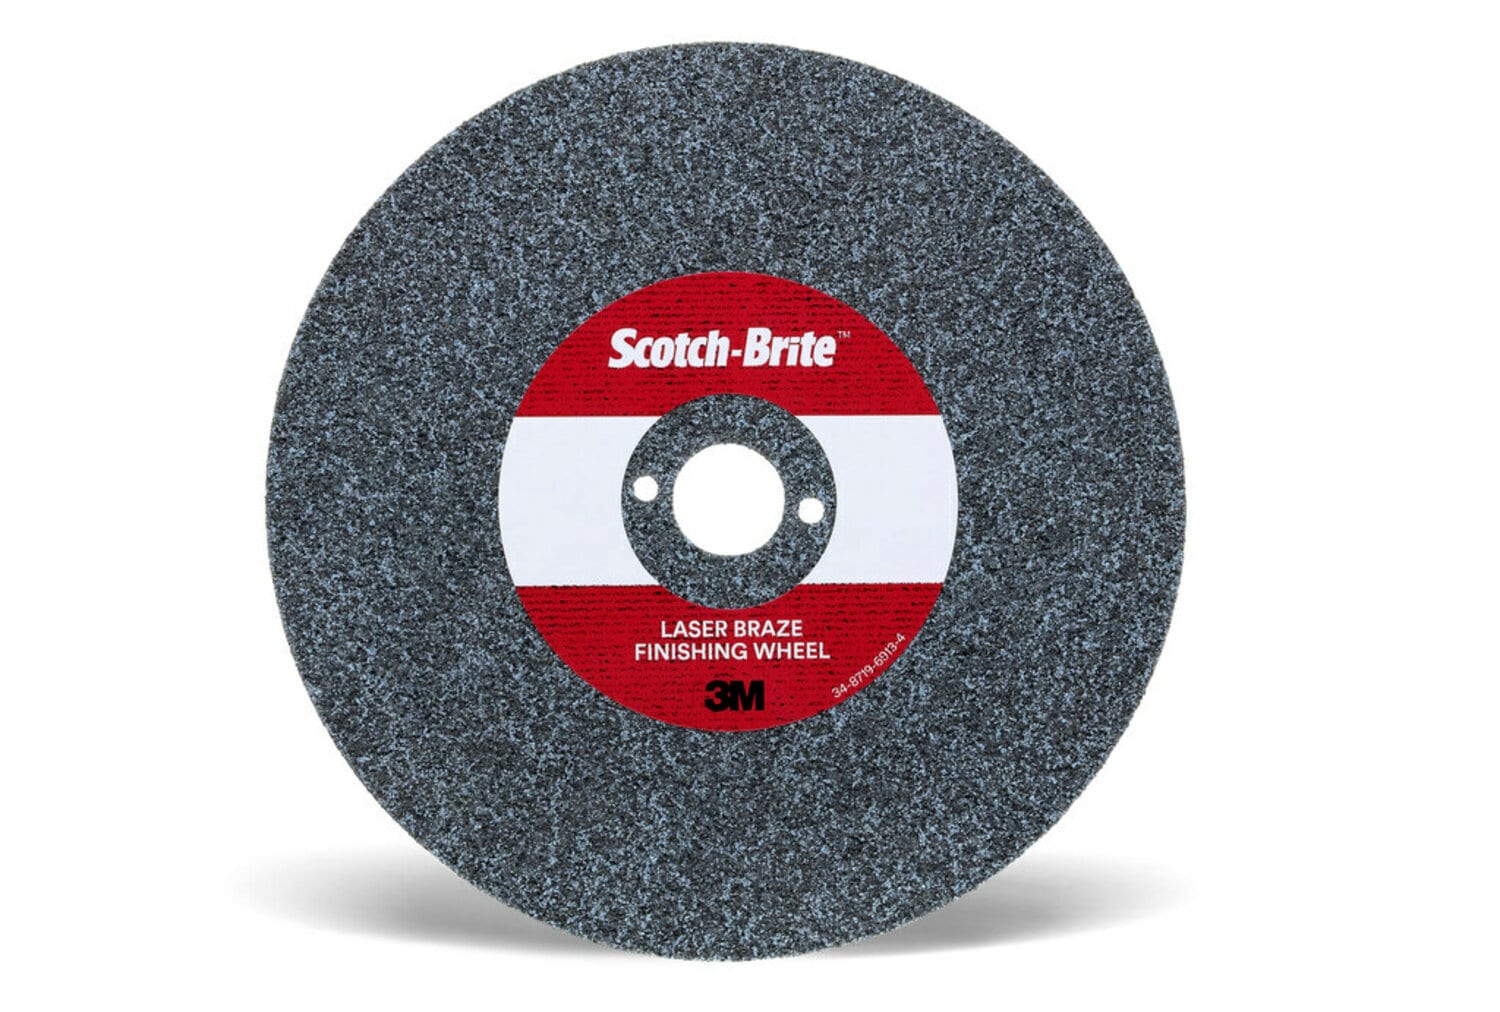 7100115526 - Scotch-Brite Laser Braze Finishing Wheel, 8 in x 4.2mm x 1 in, 10
ea/Case